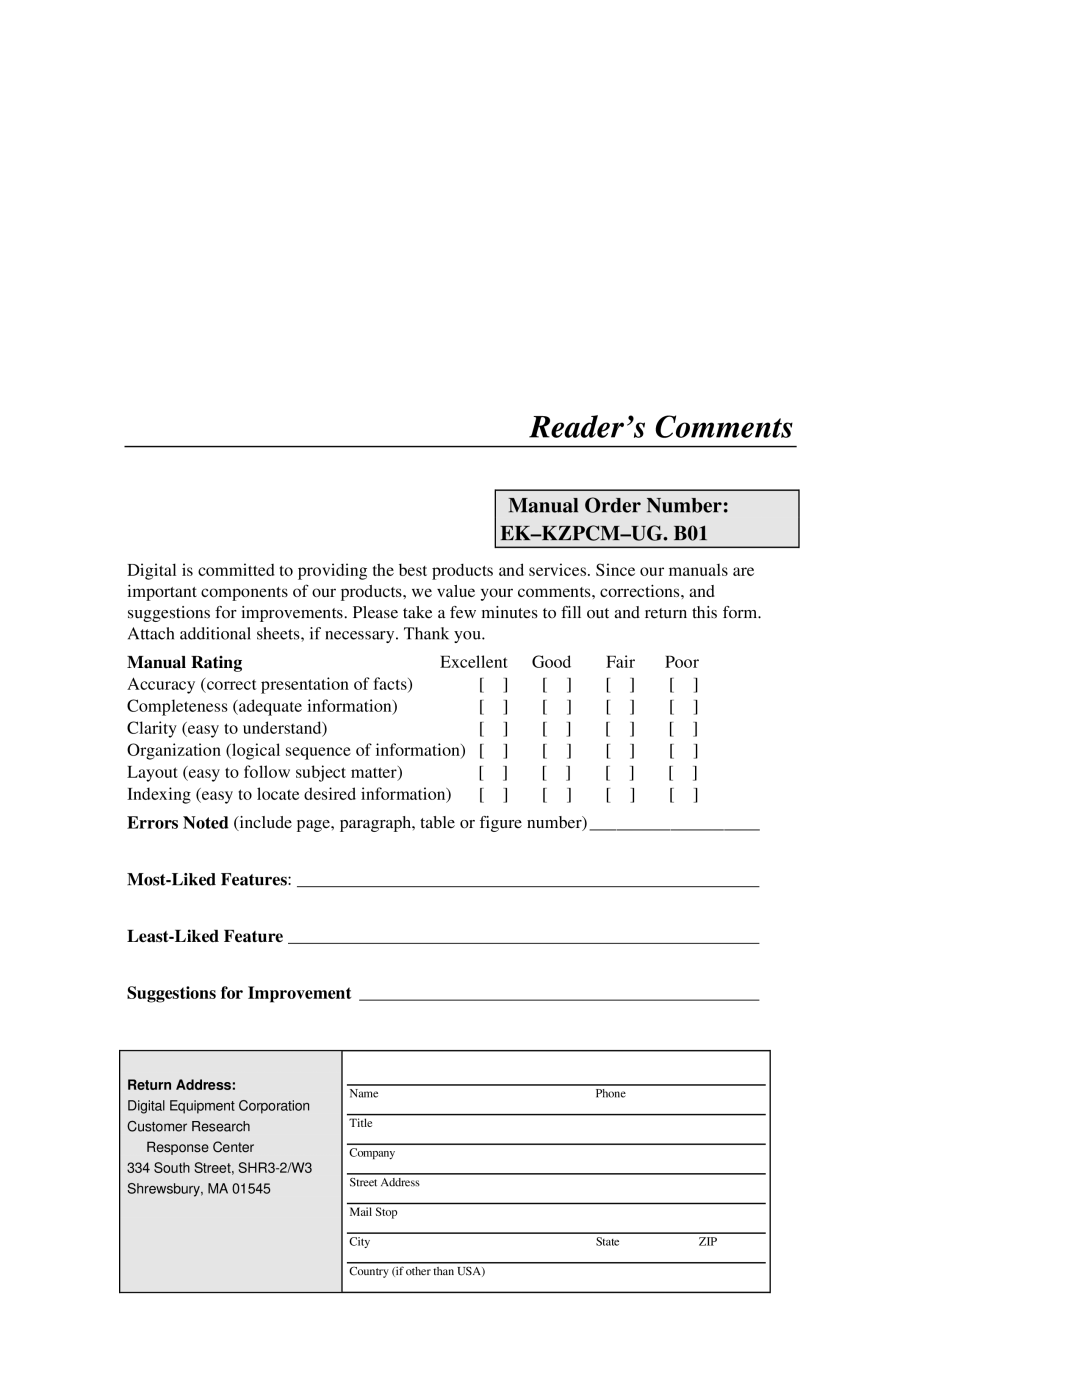 Intel manual Reader’s Comments, Manual Rating, Manual Order Number EK-KZPCM-UG. B01 